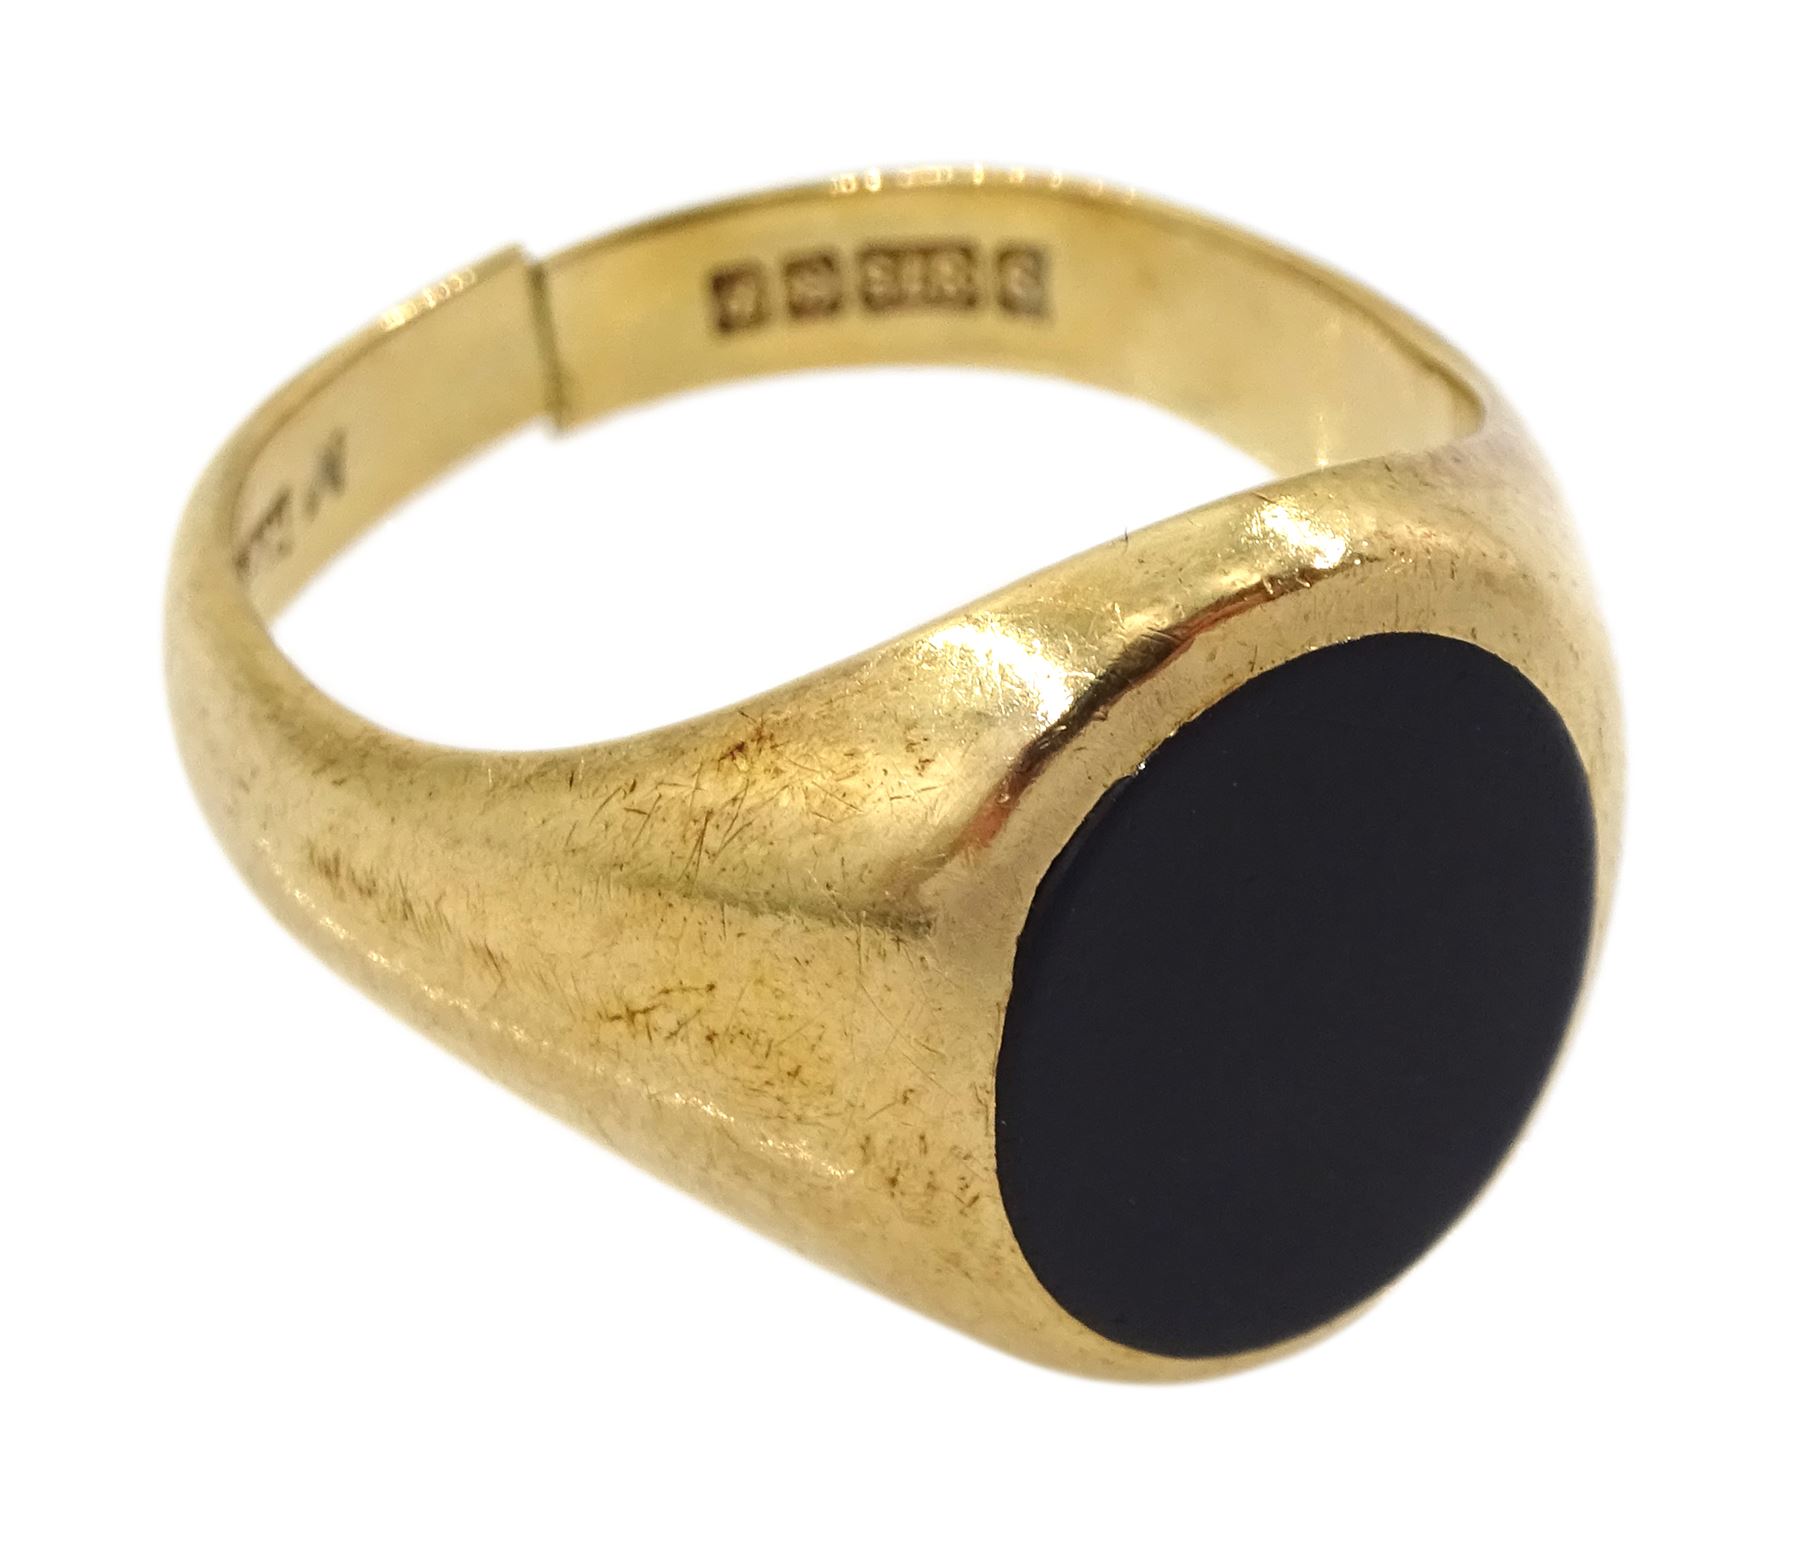 9ct gold single stone black onyx signet ring - Image 2 of 3